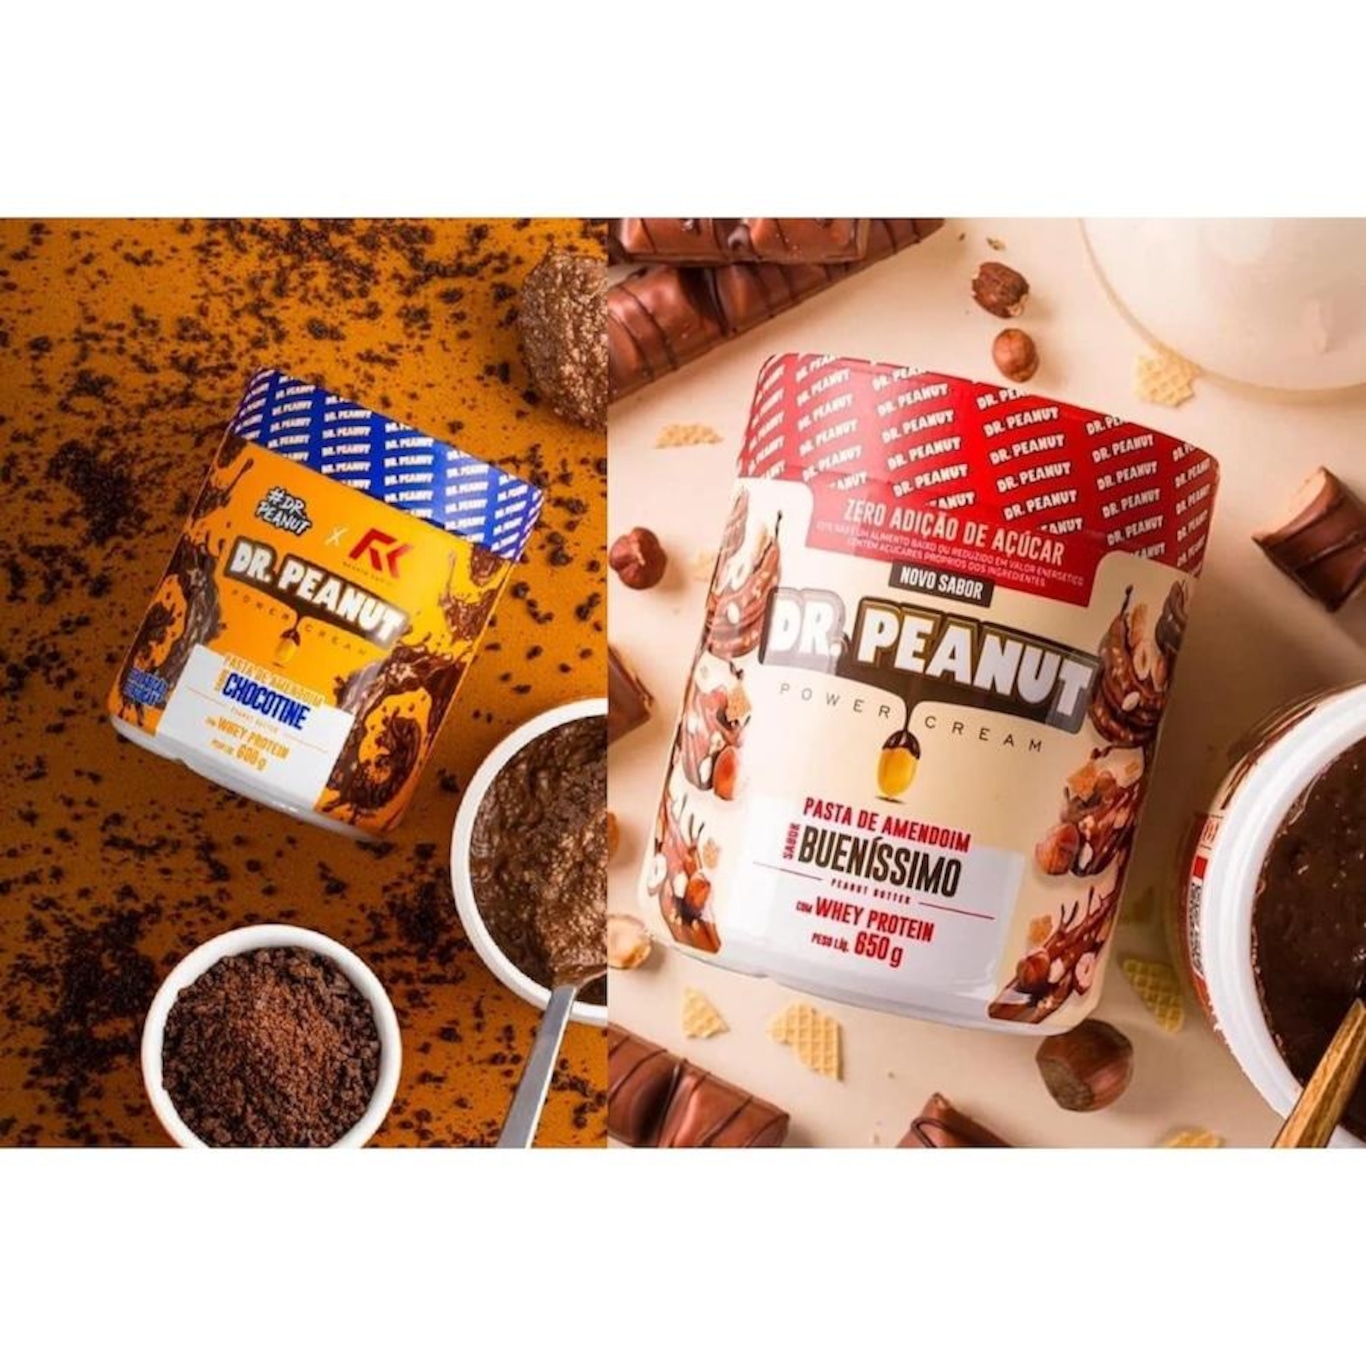 kit Pastas de Amendoim Dr.Peanut - Chocotine+Bueníssimo - 600g - 4 Unidades  + Galão Cristal Max Titanium - 1,5 Litros